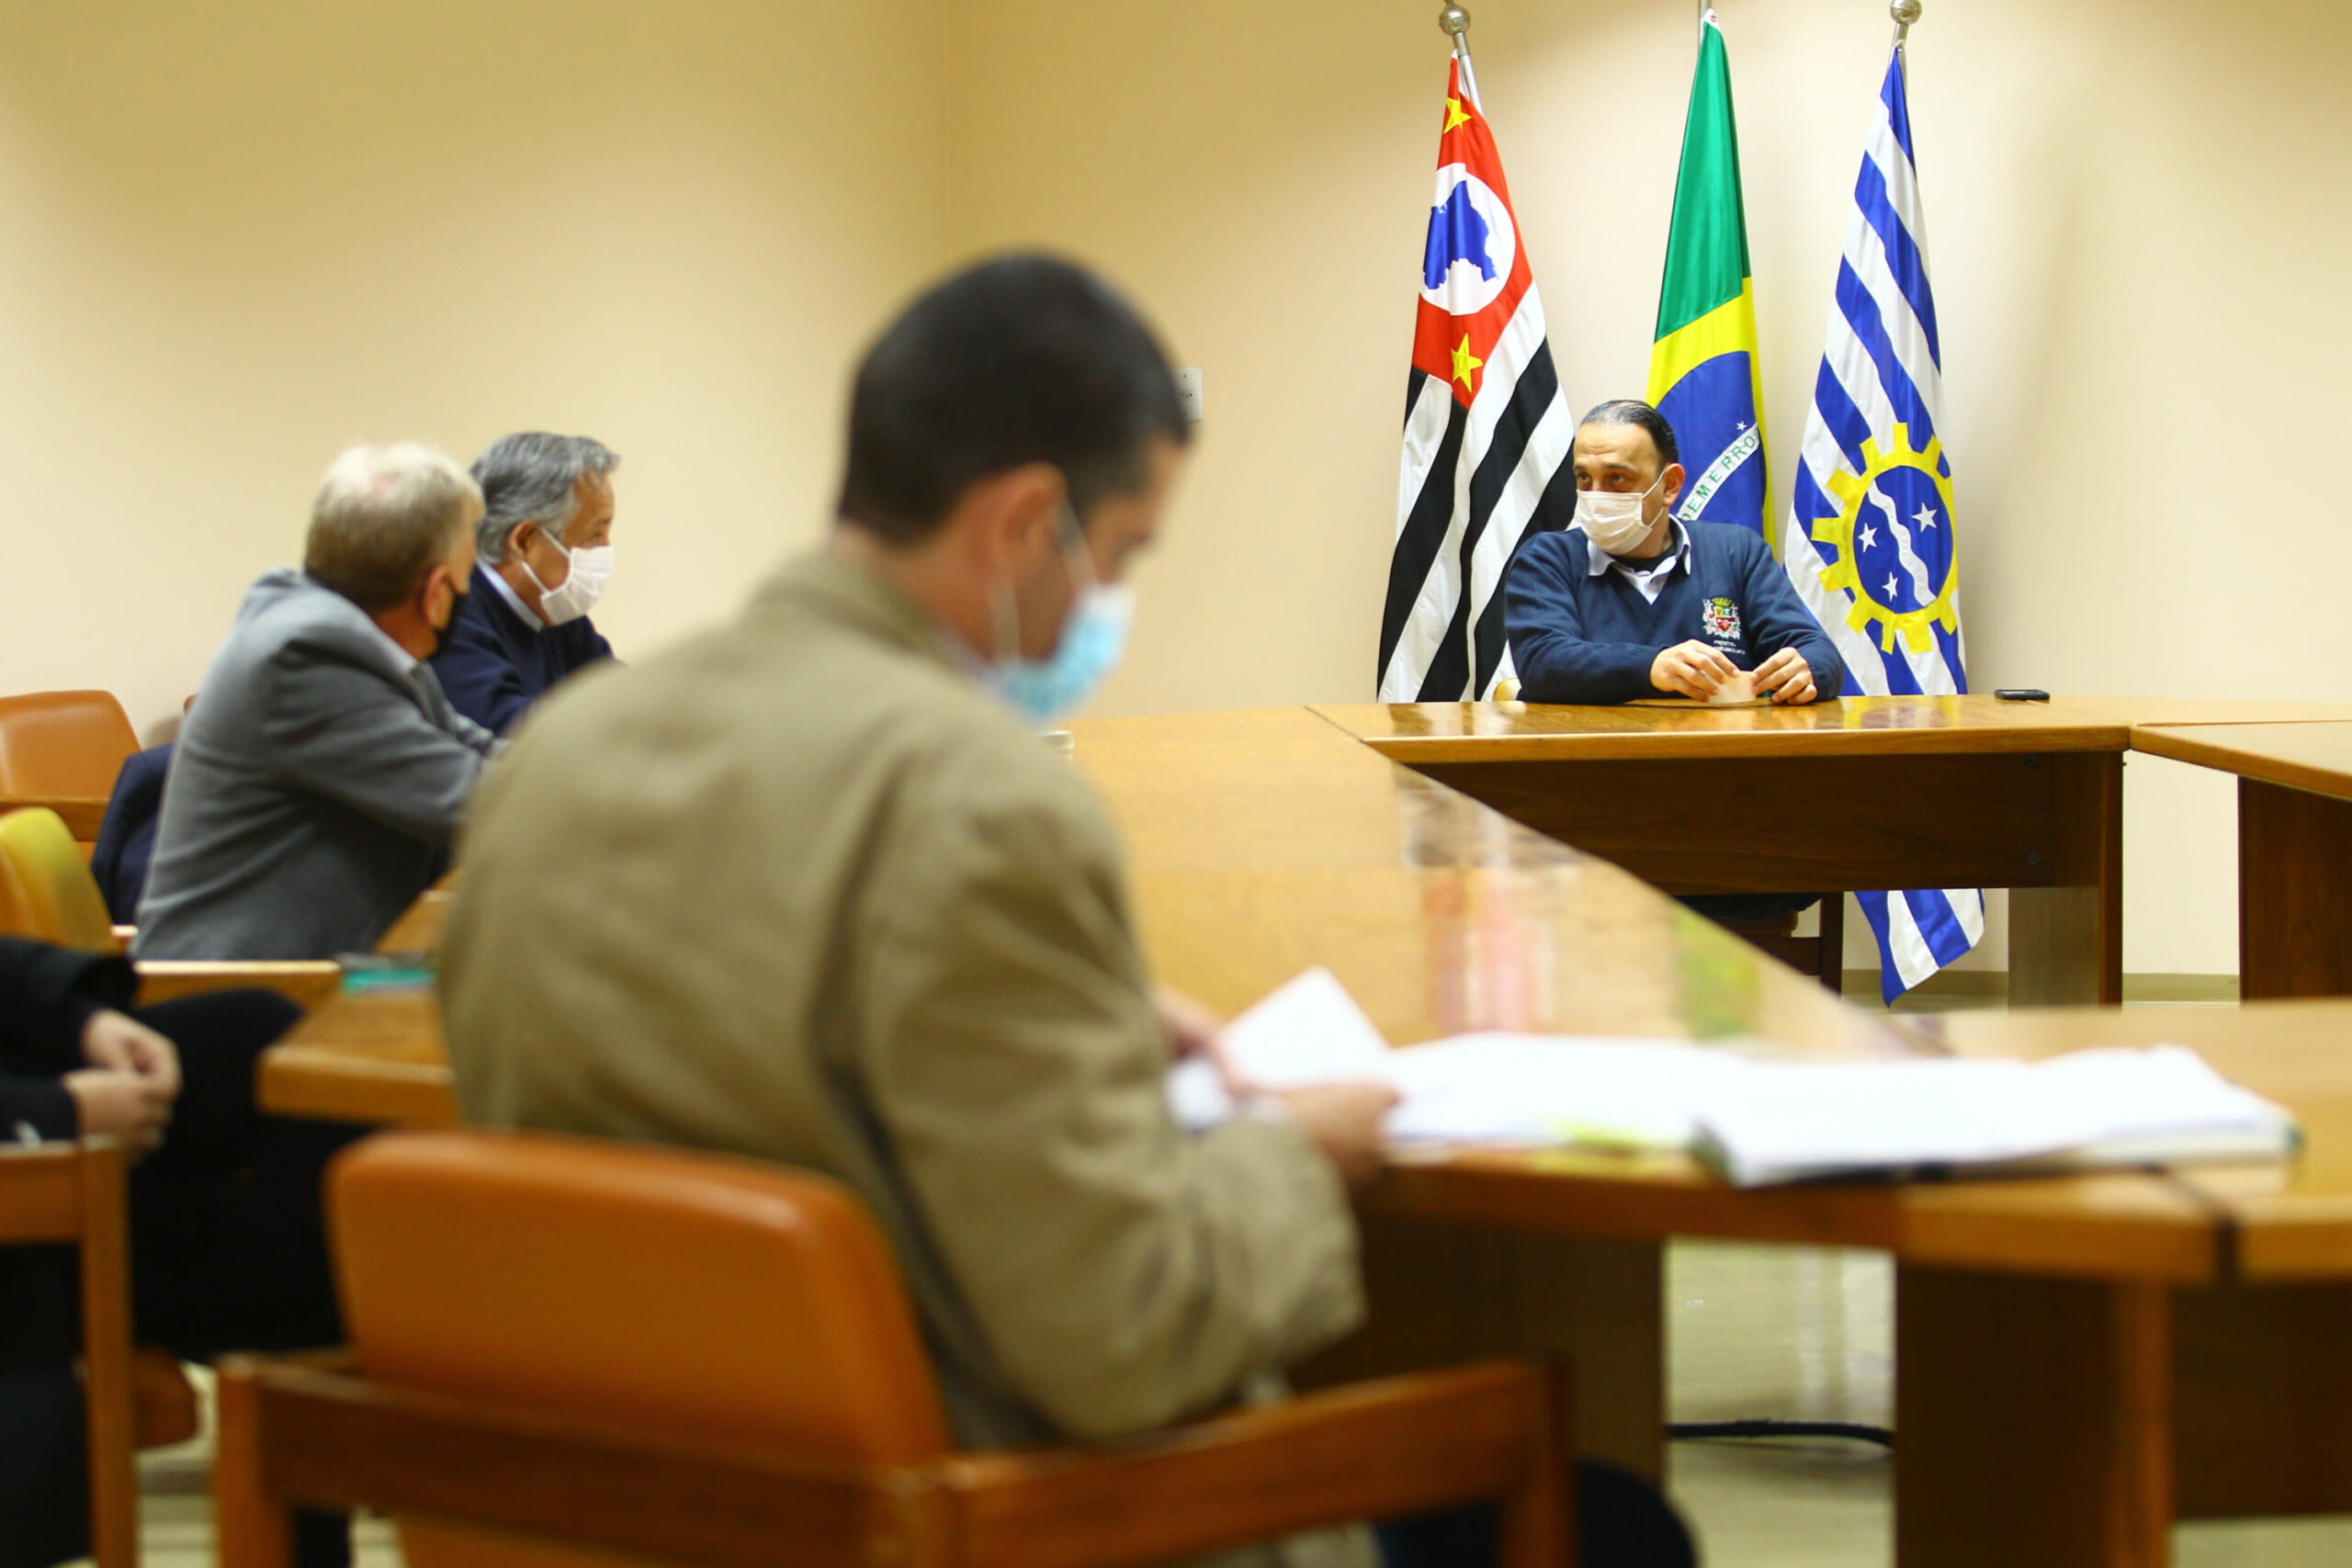 Sentados a mesa conversando estão o presidente, o vice-presidente e o coordenador técnico médico-veterinário do CRMV-SP, e, ao fundo em frente as bandeiras do município, do estado e do Brasil, o prefeito de São José dos Campos.